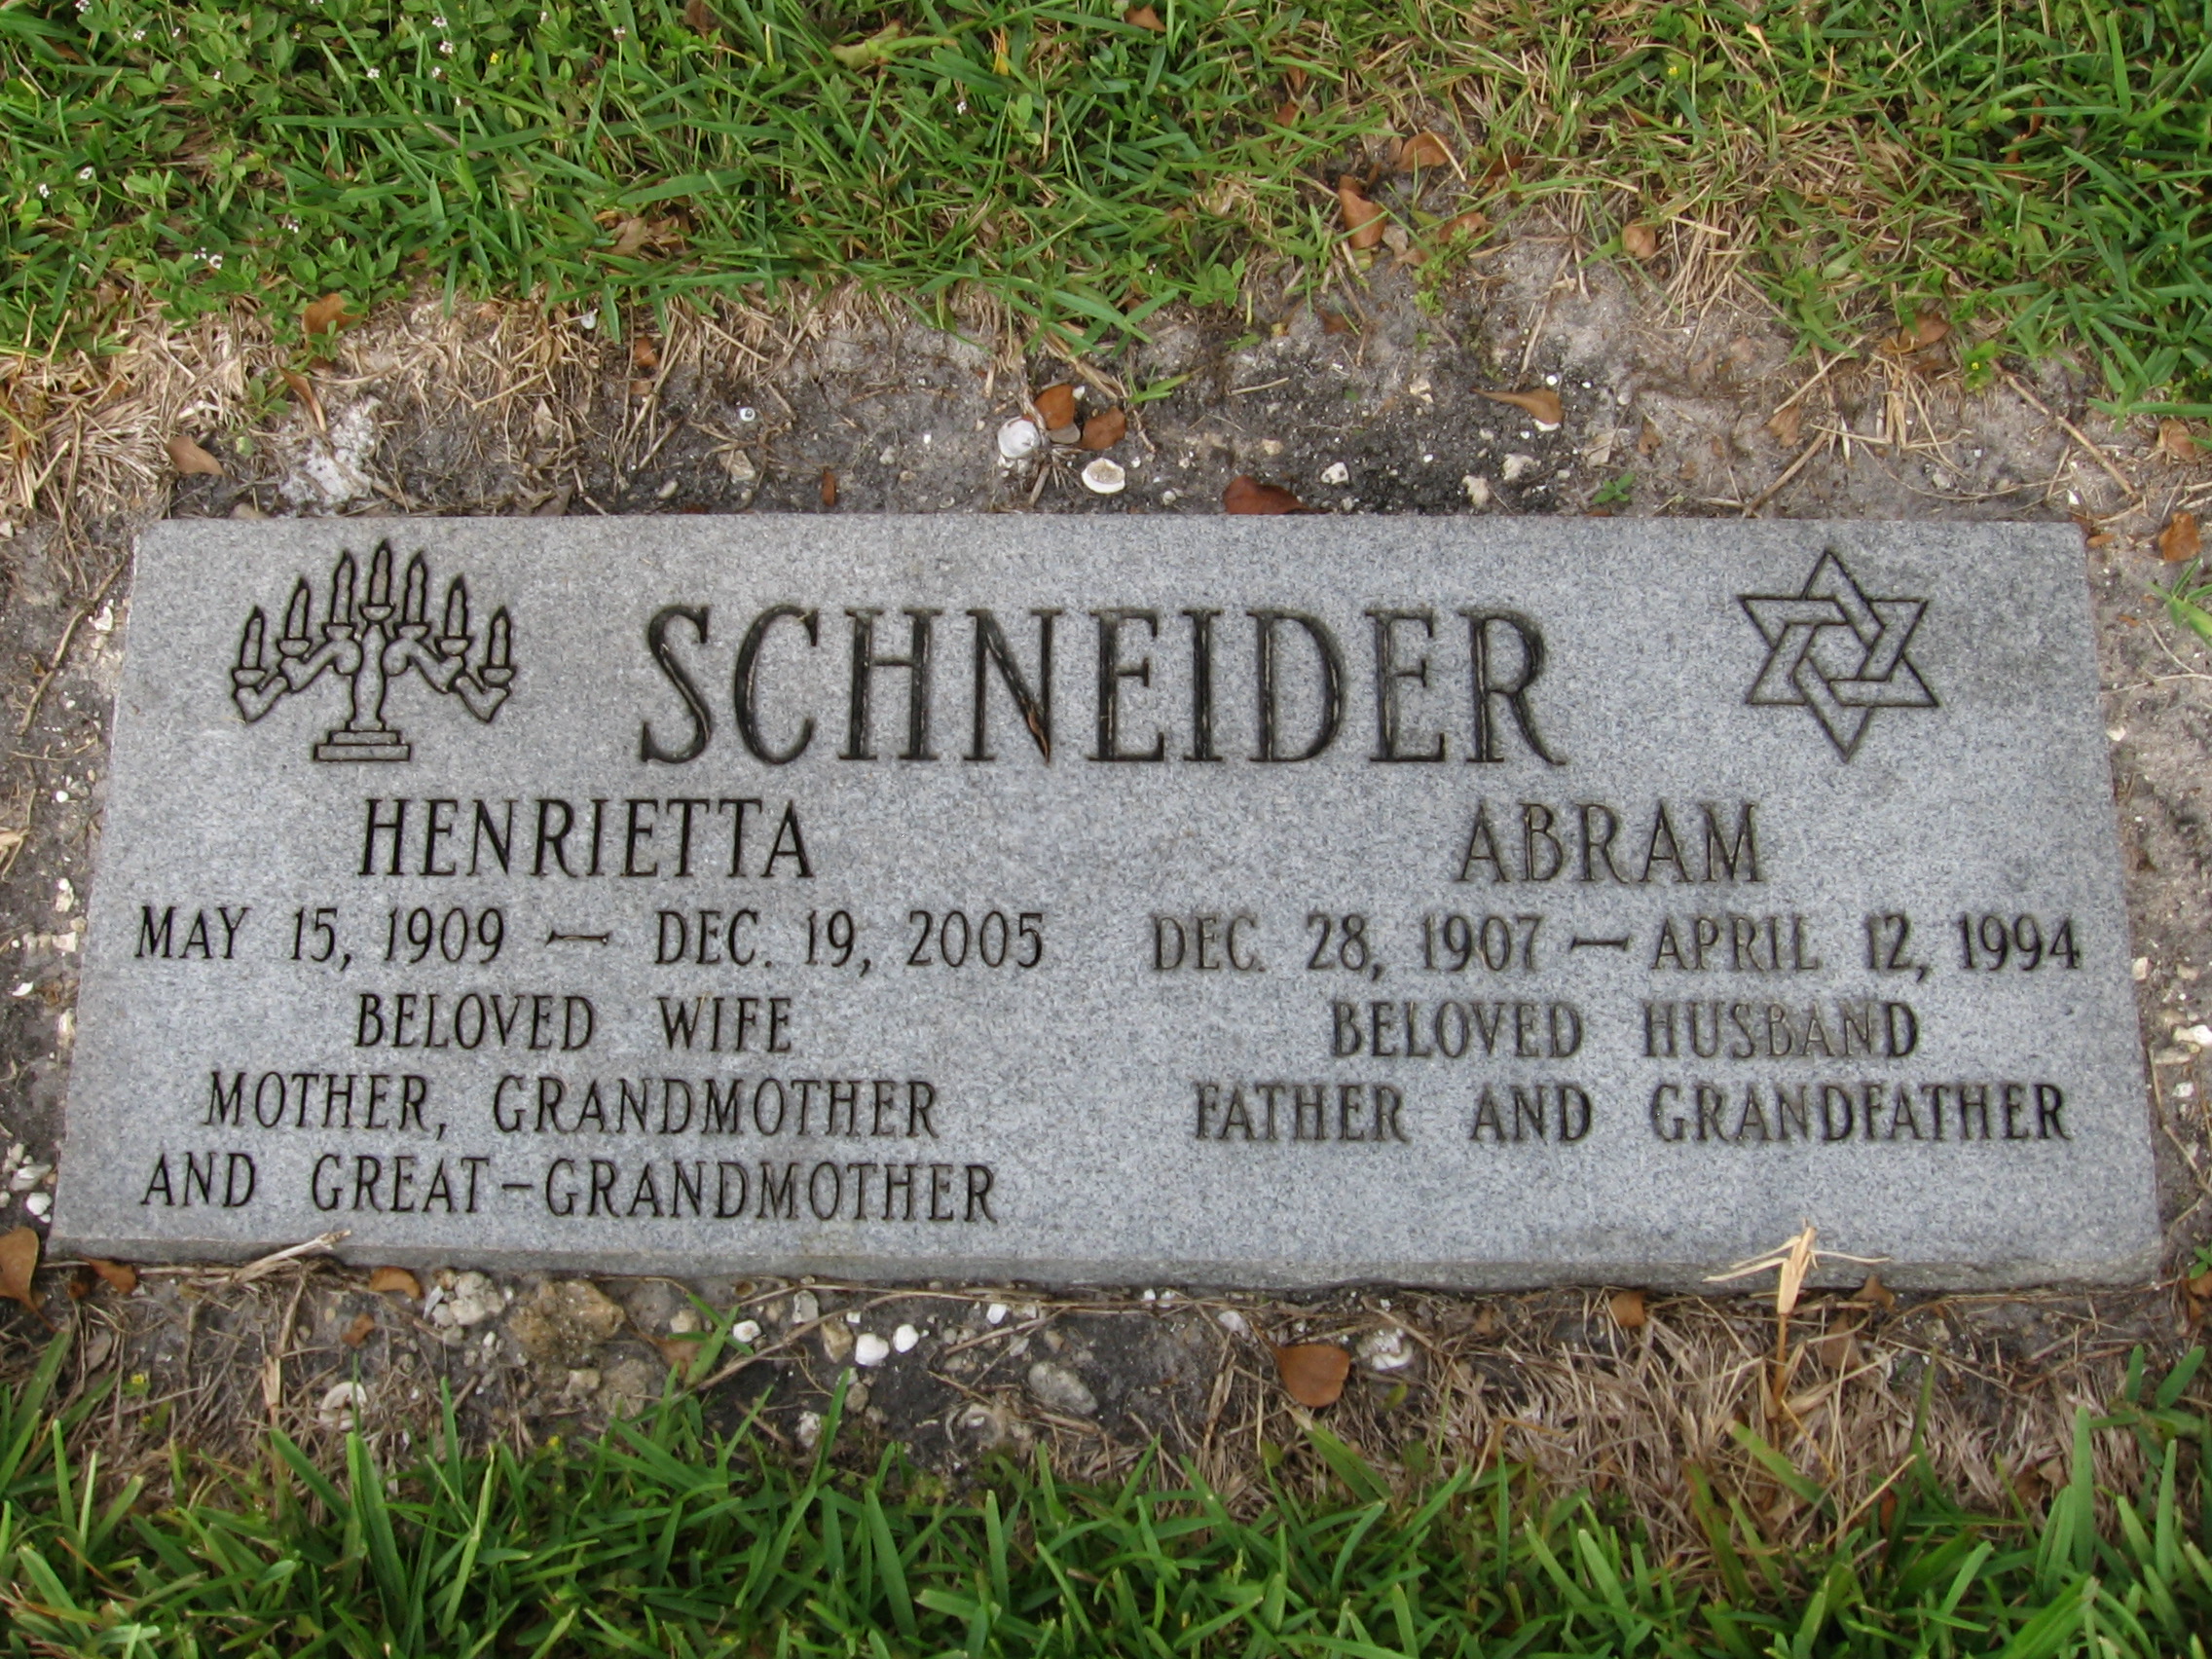 Henrietta Schneider